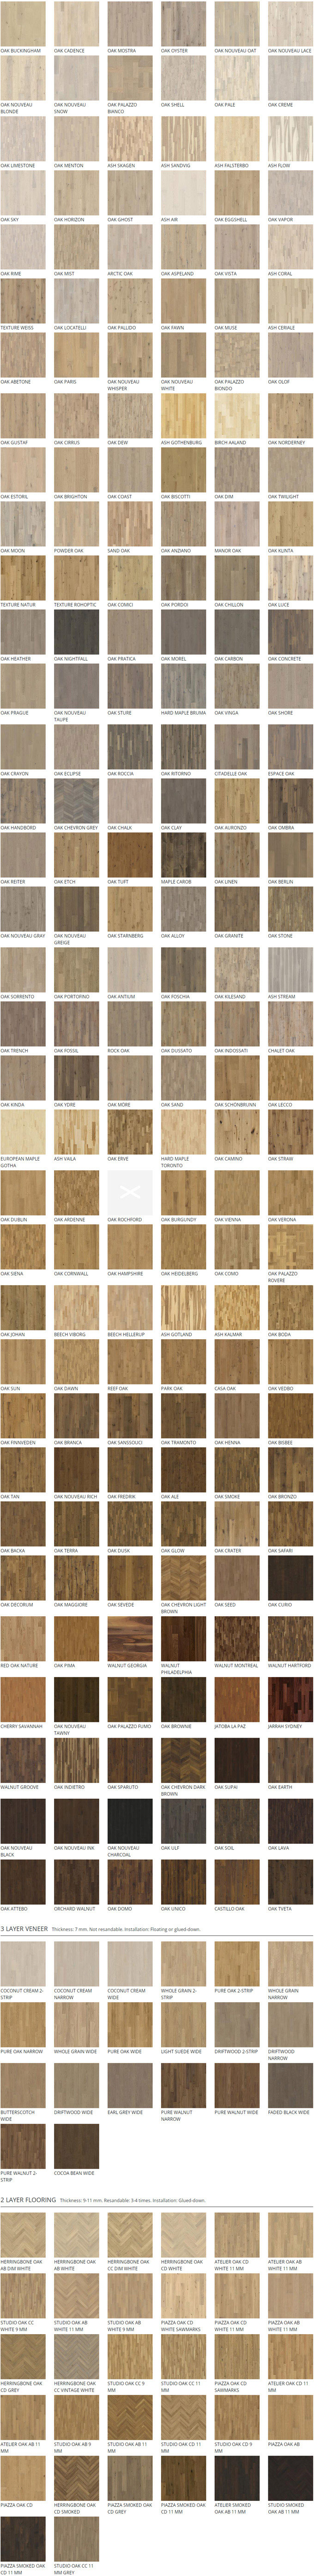 catalogo suelos de madera Murcia